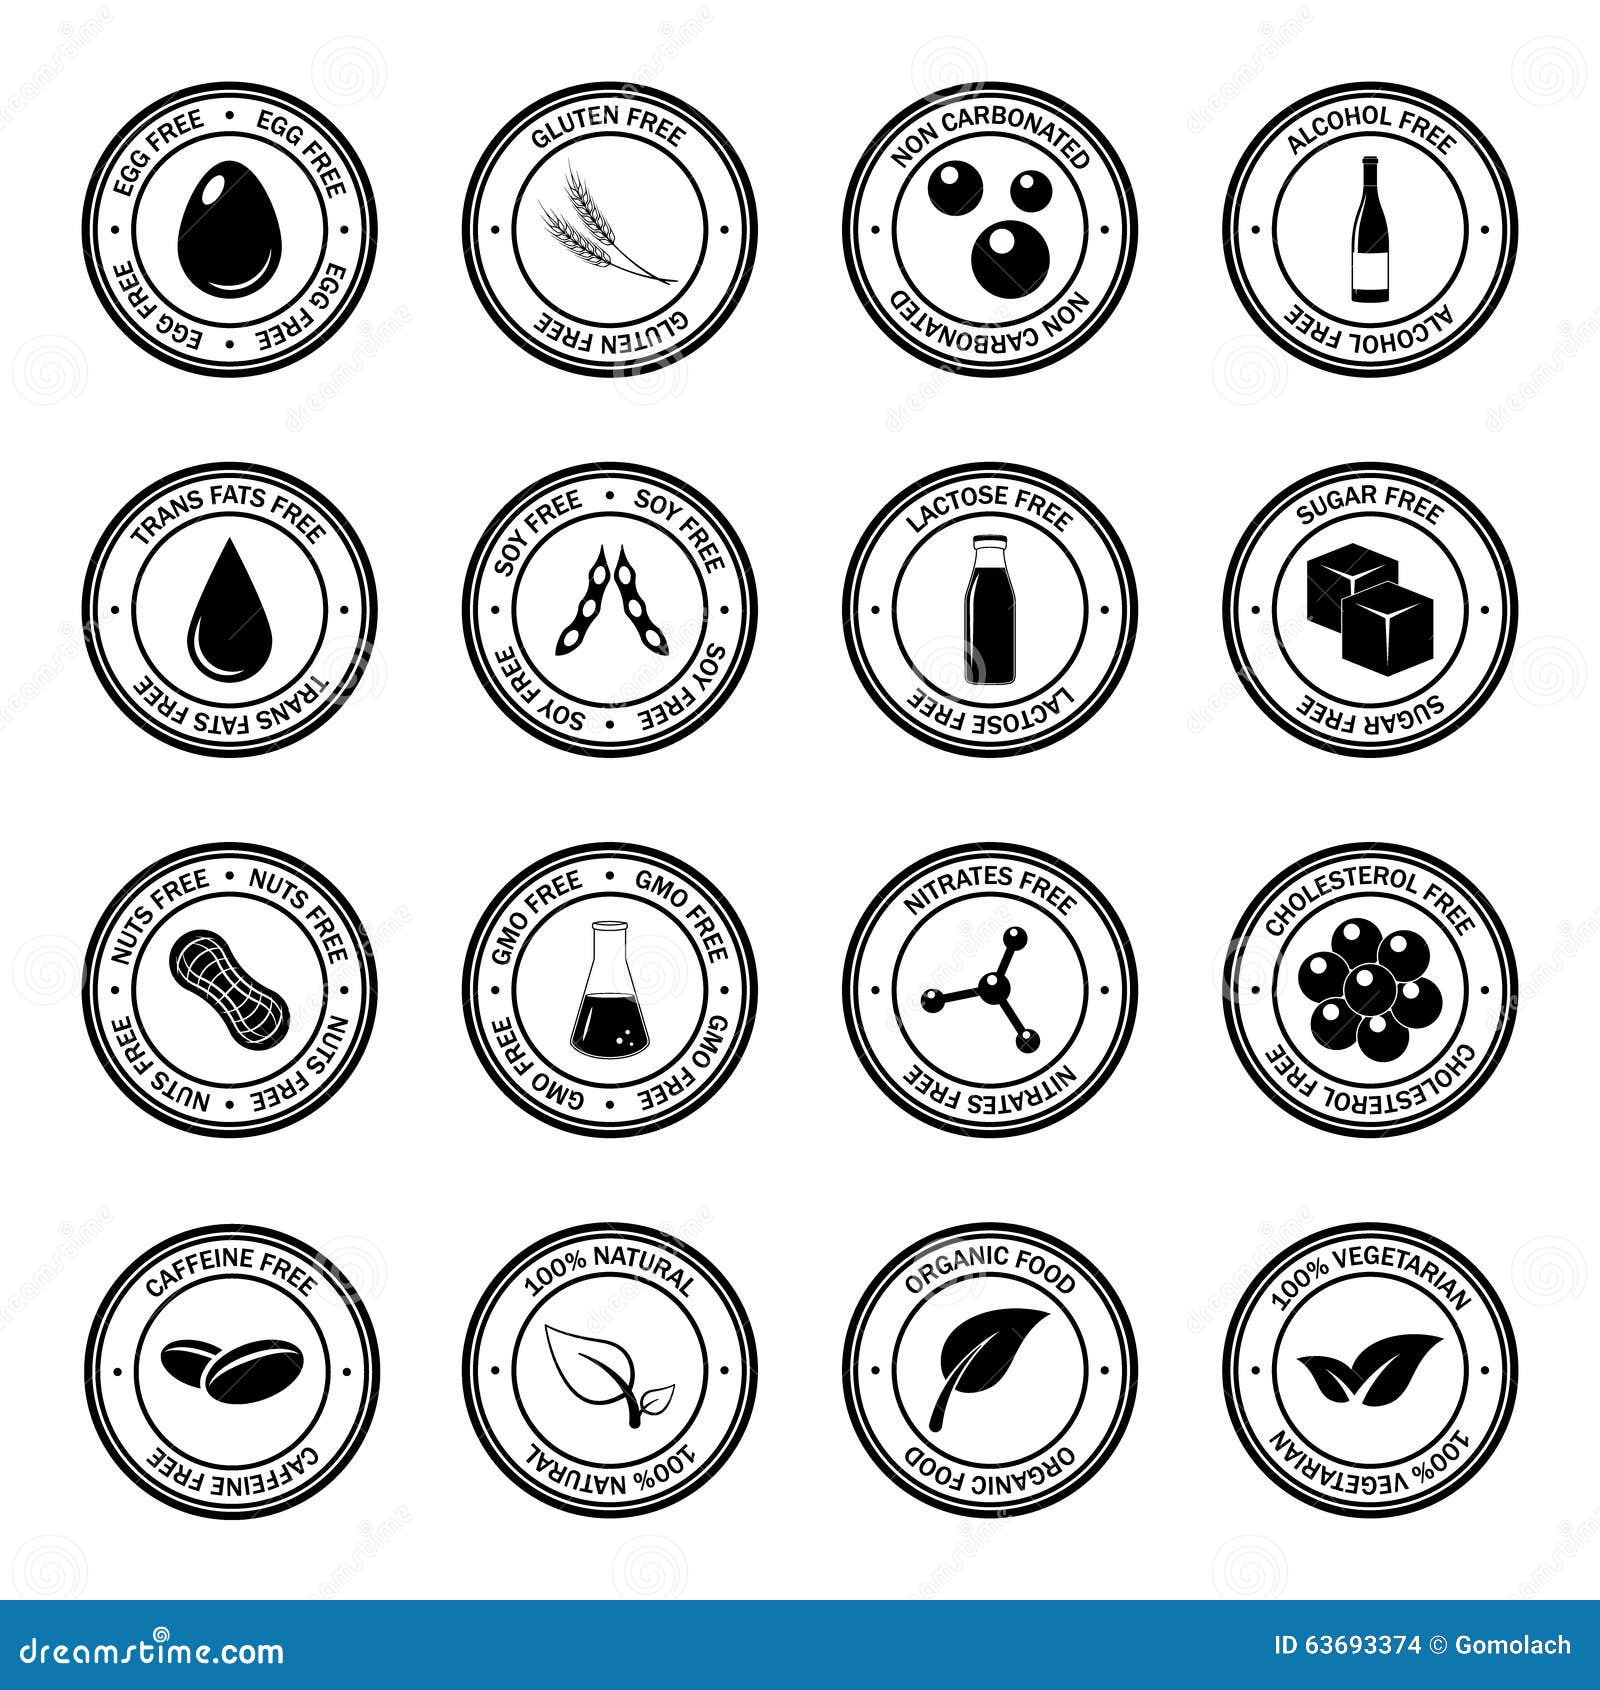 Allergen Icons Vector Set. Stock Vector - Image: 63693374